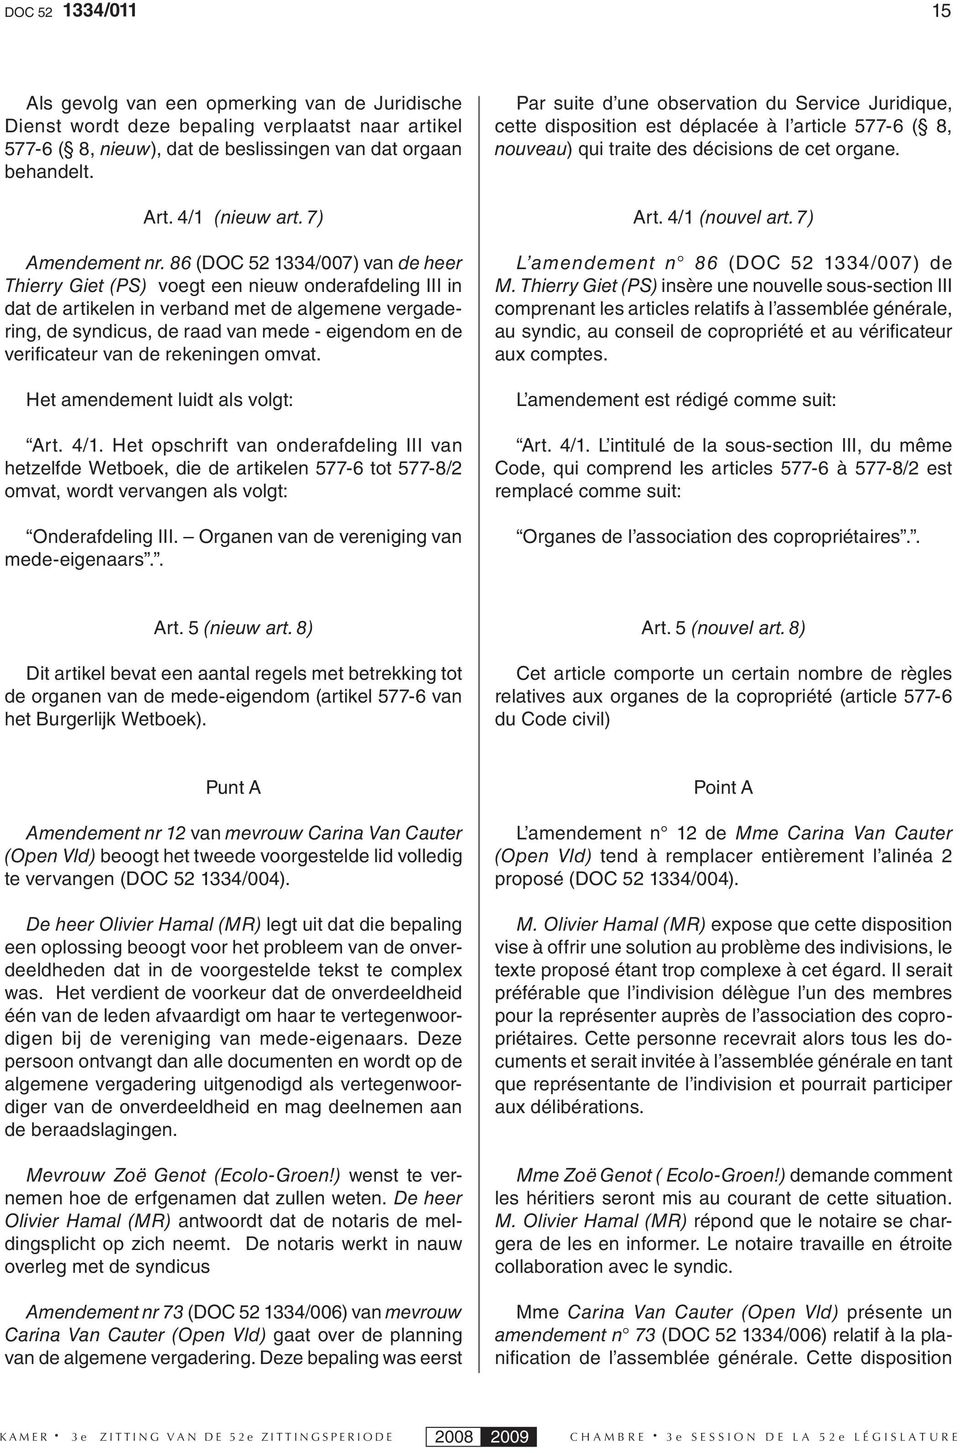 86 (DOC 52 1334/007) van de heer Thierry Giet (PS) voegt een nieuw onderafdeling III in dat de artikelen in verband met de algemene vergadering, de syndicus, de raad van mede - eigendom en de verifi